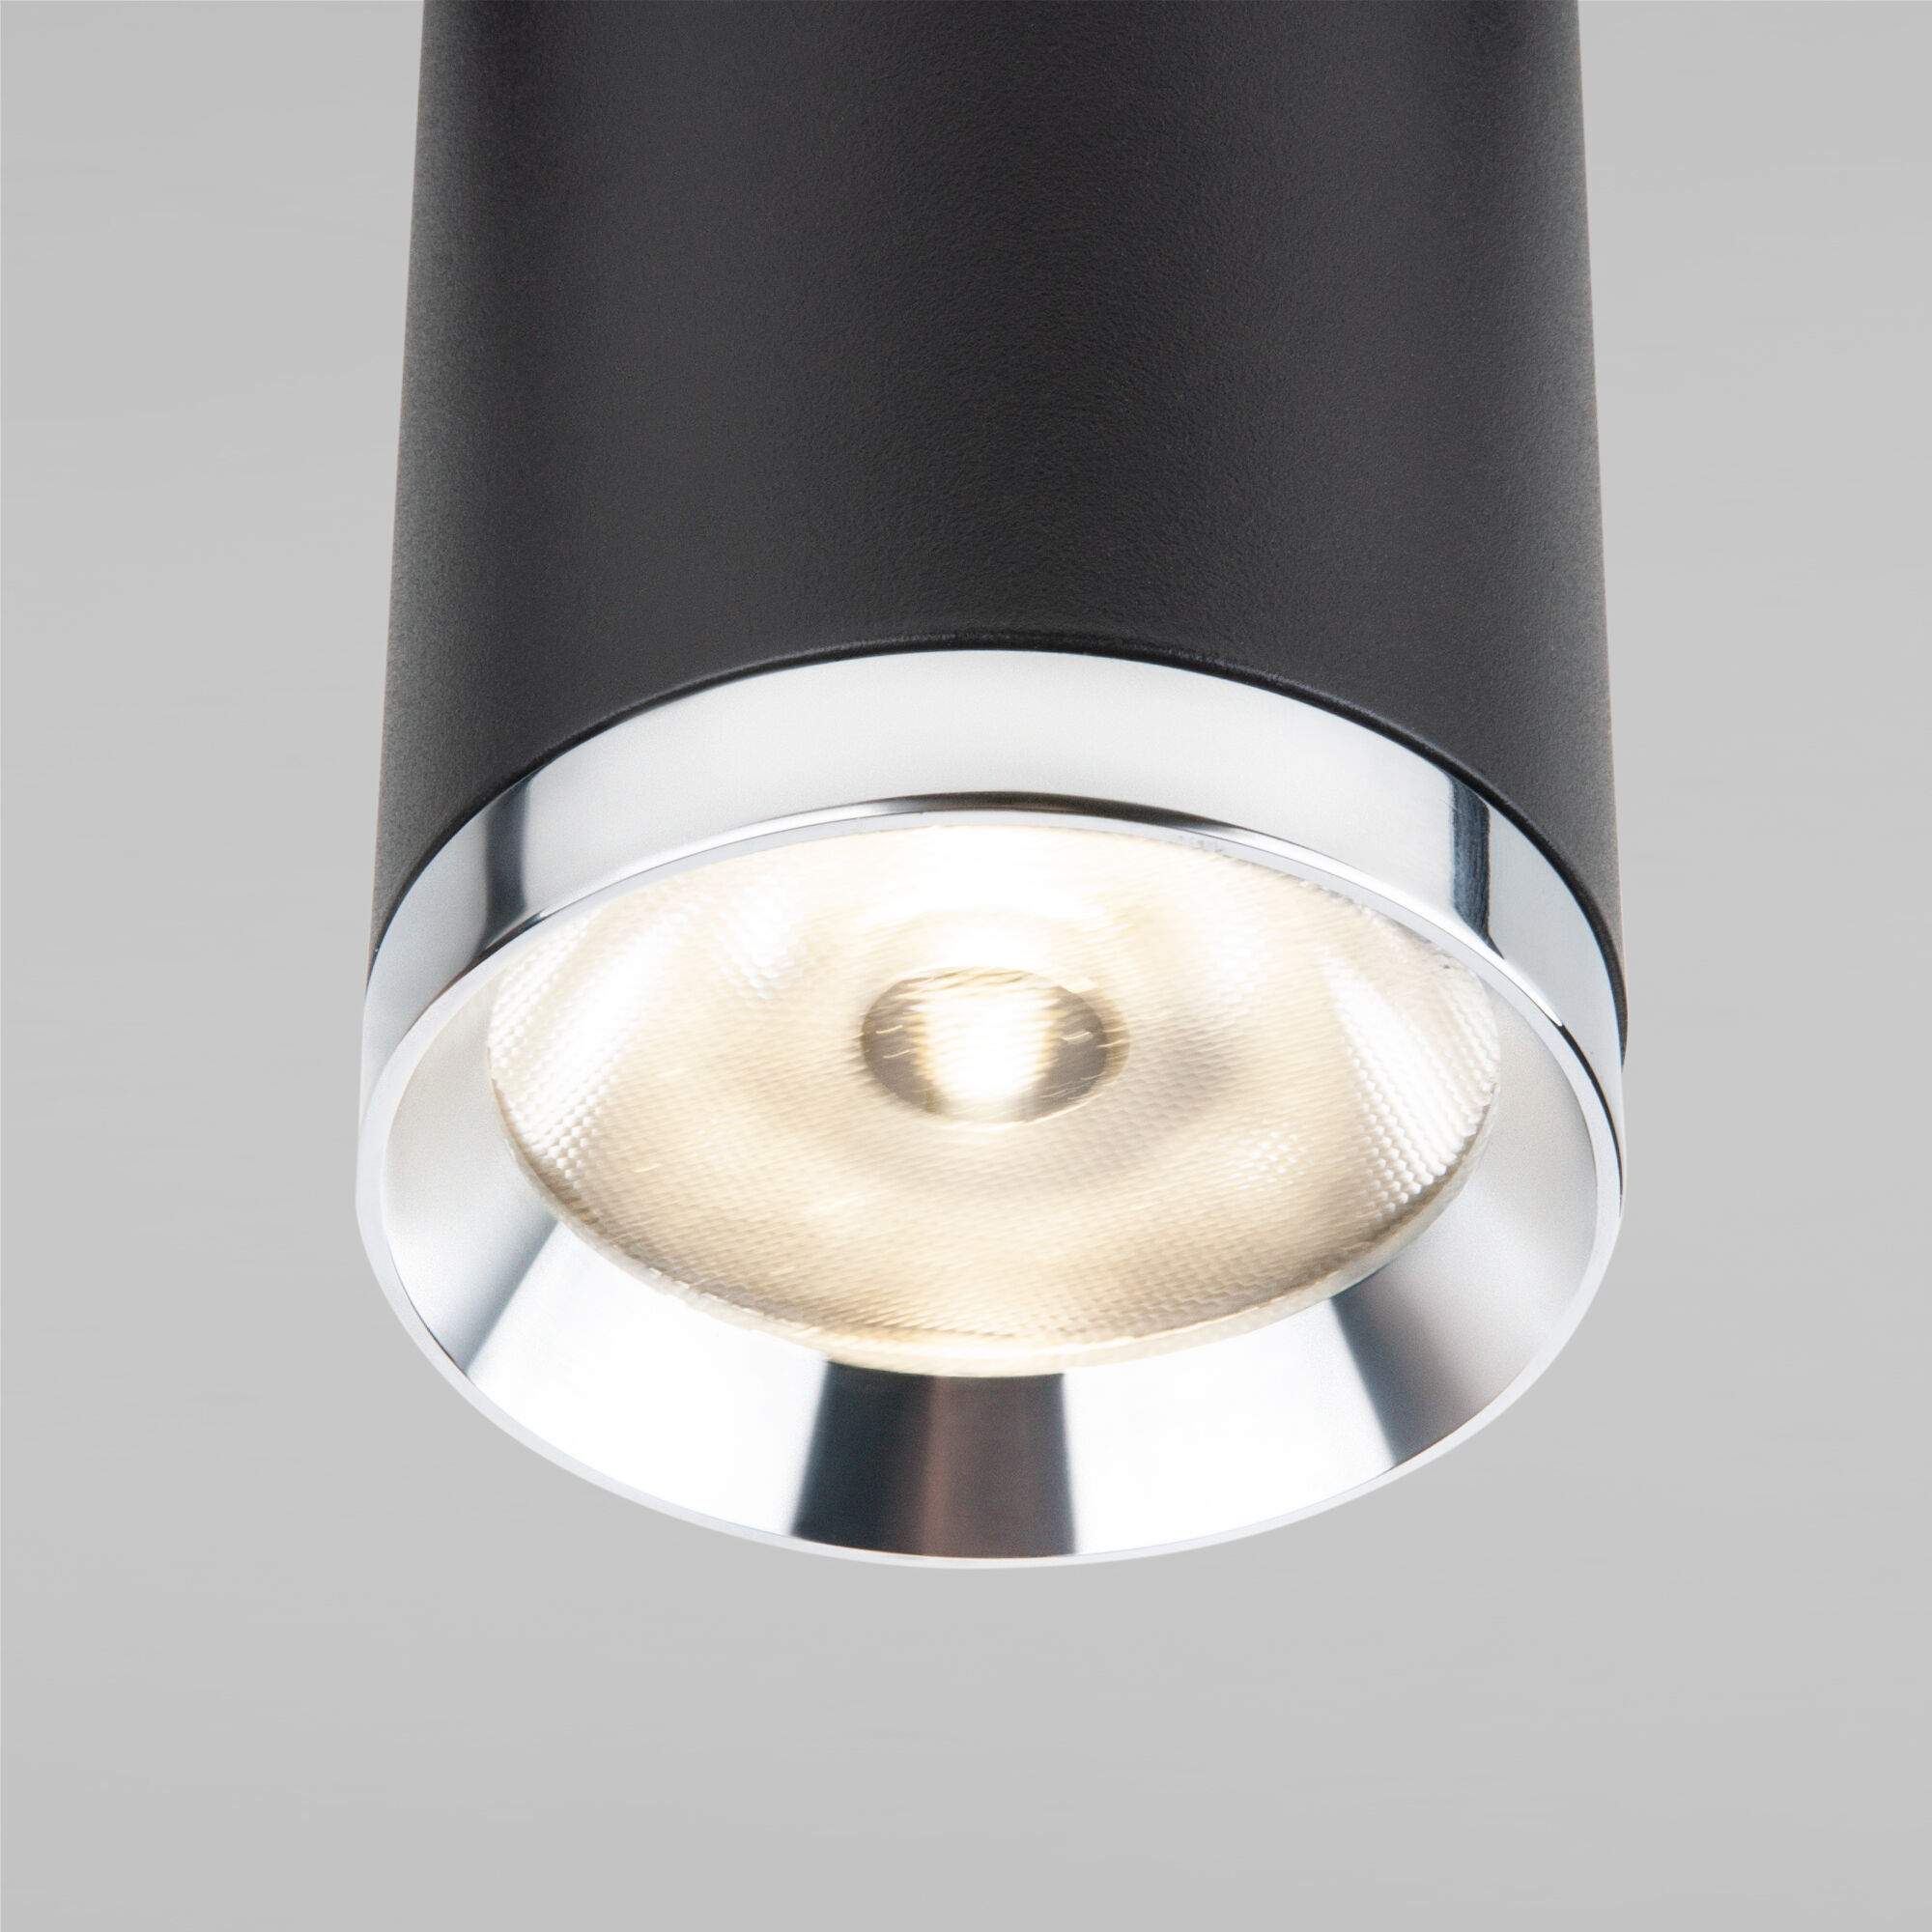 Slim Magnetic R06 Трековый светильник 10W 4200K Ringe (черный/серебро) 85506/01